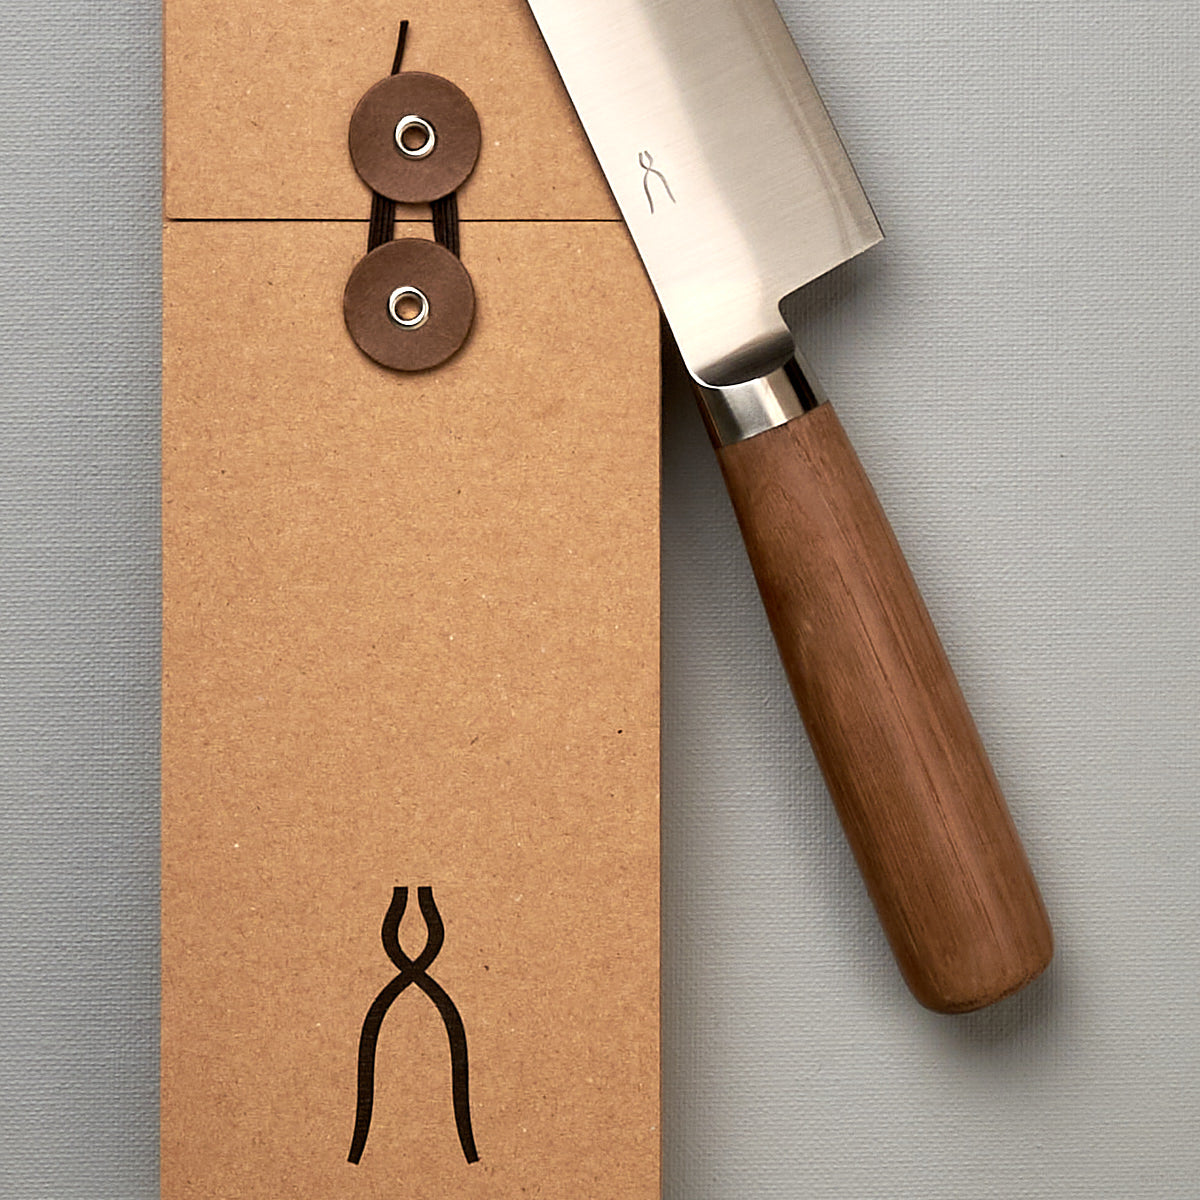 A brown box with a Tadafusa Hocho Santoku Knife on it.